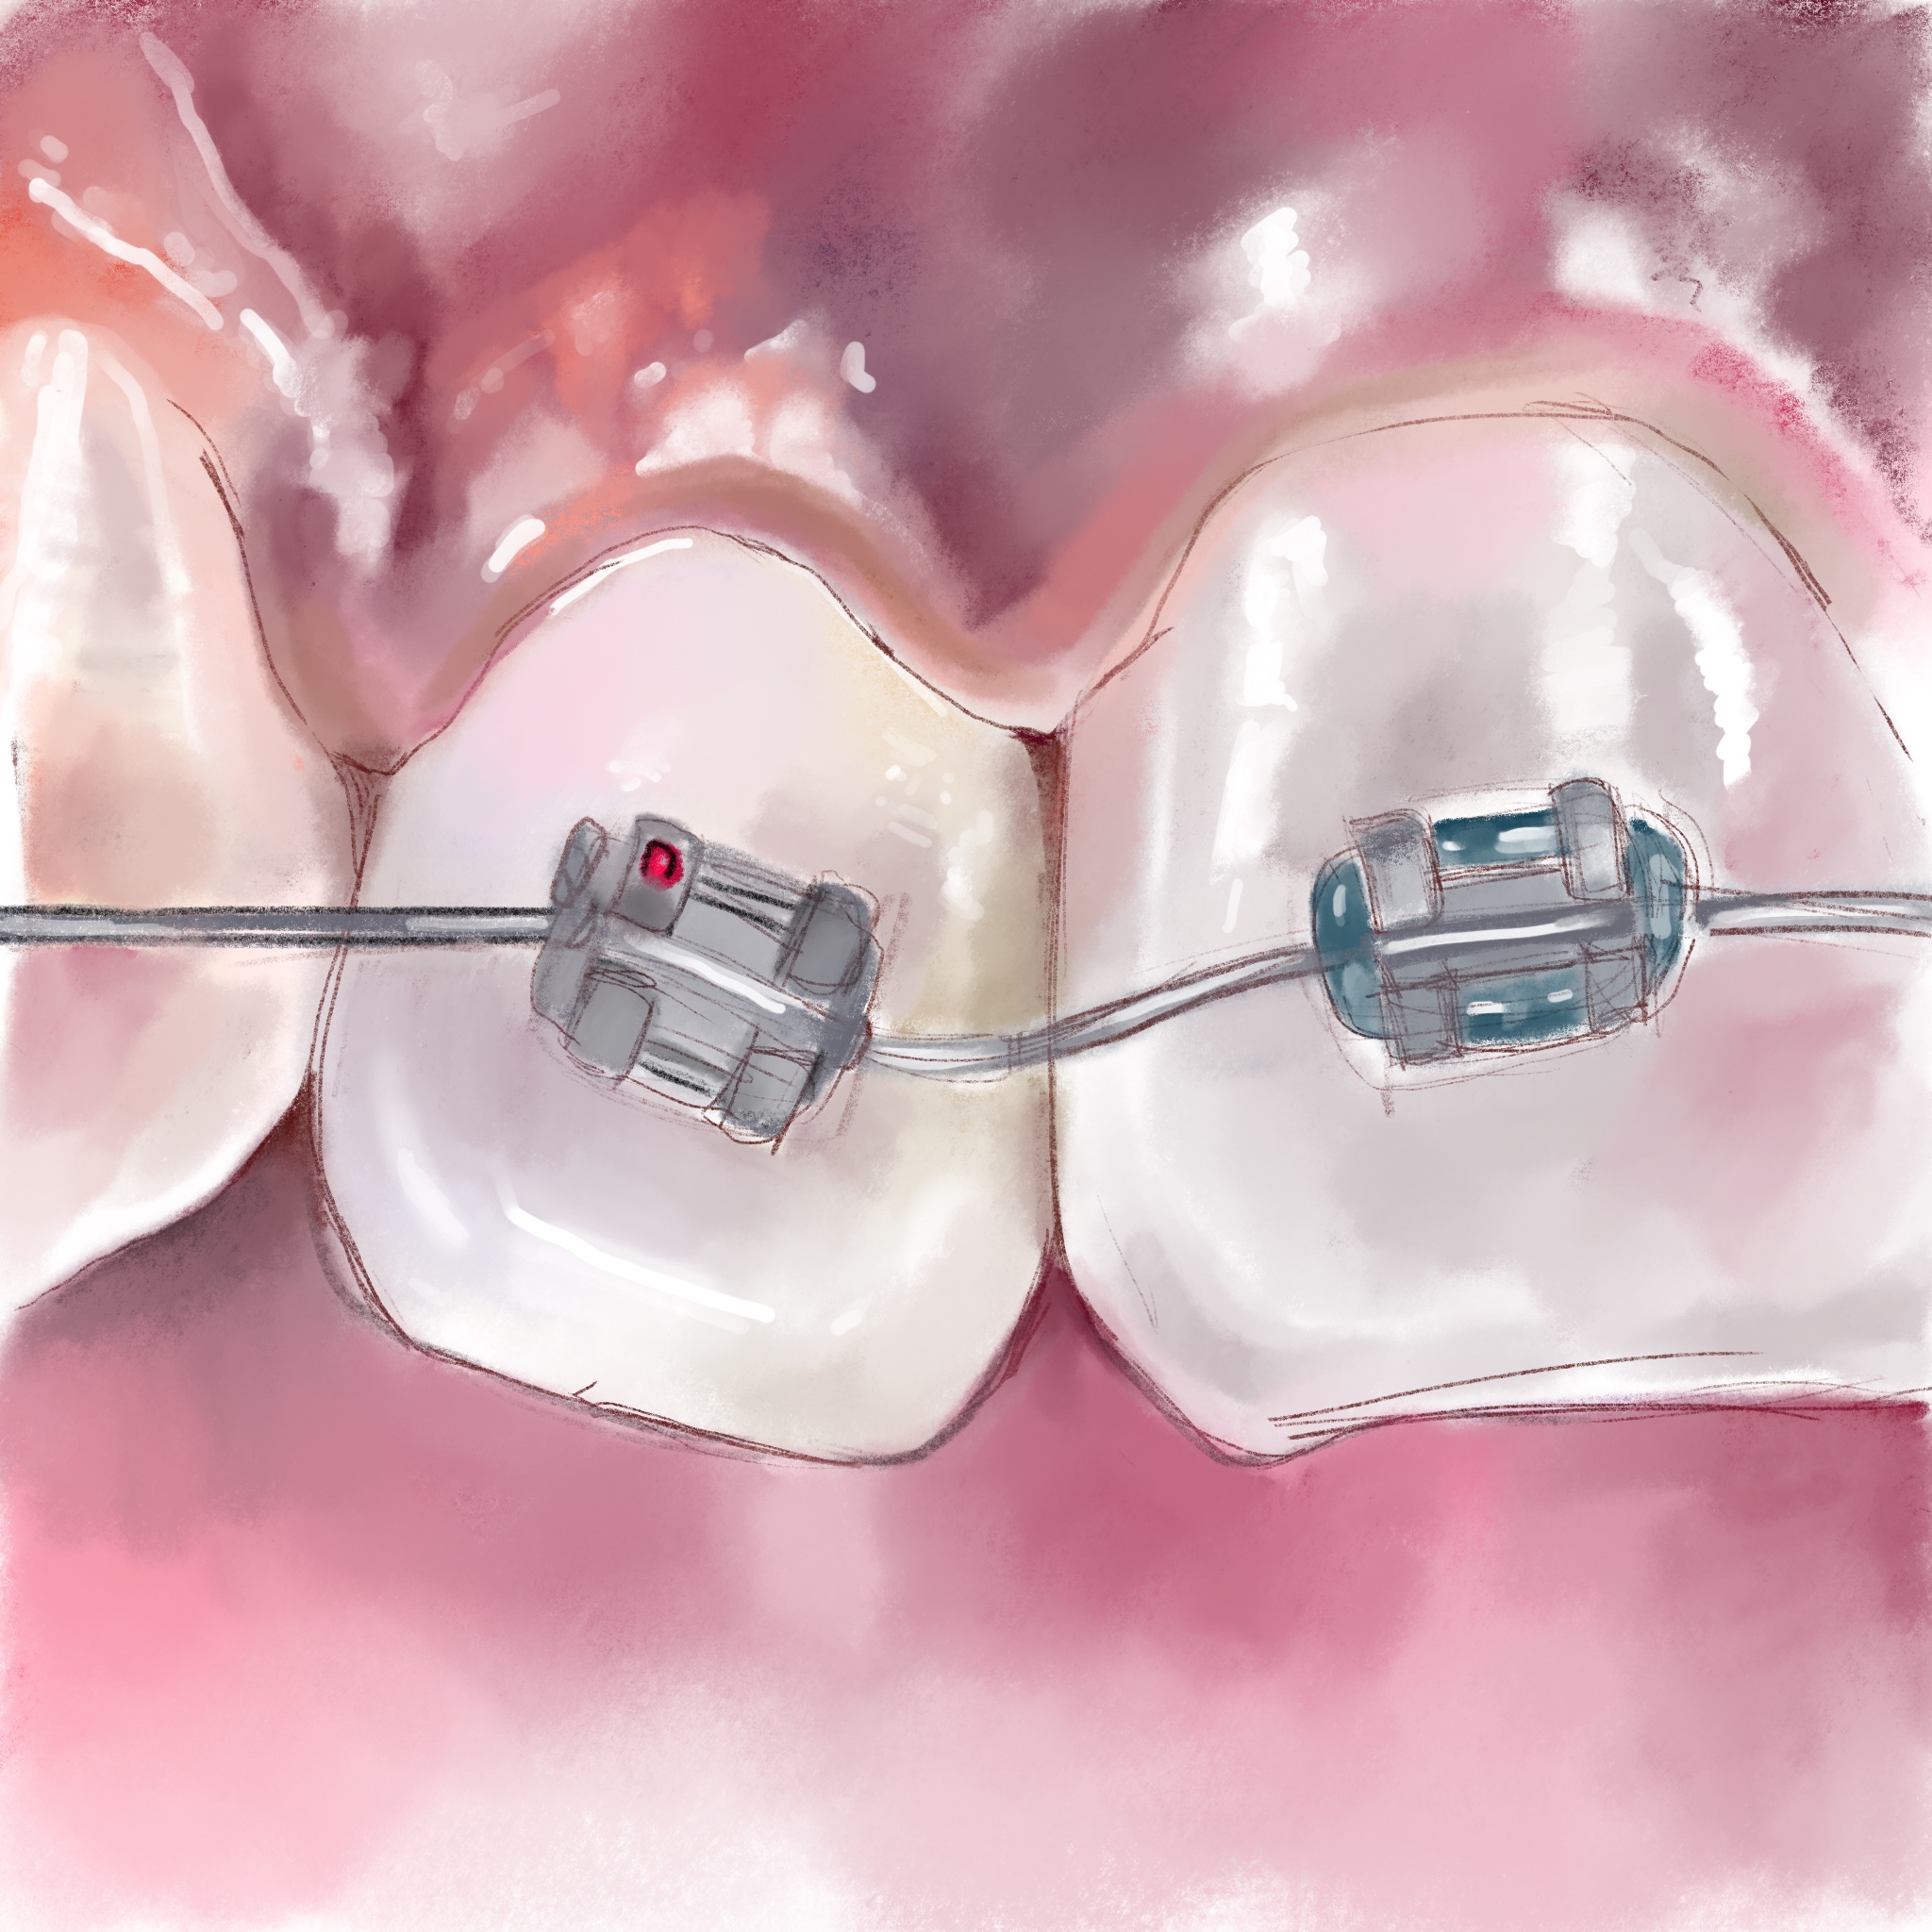 Ортодонтическое лечение как подготовка к протезированию